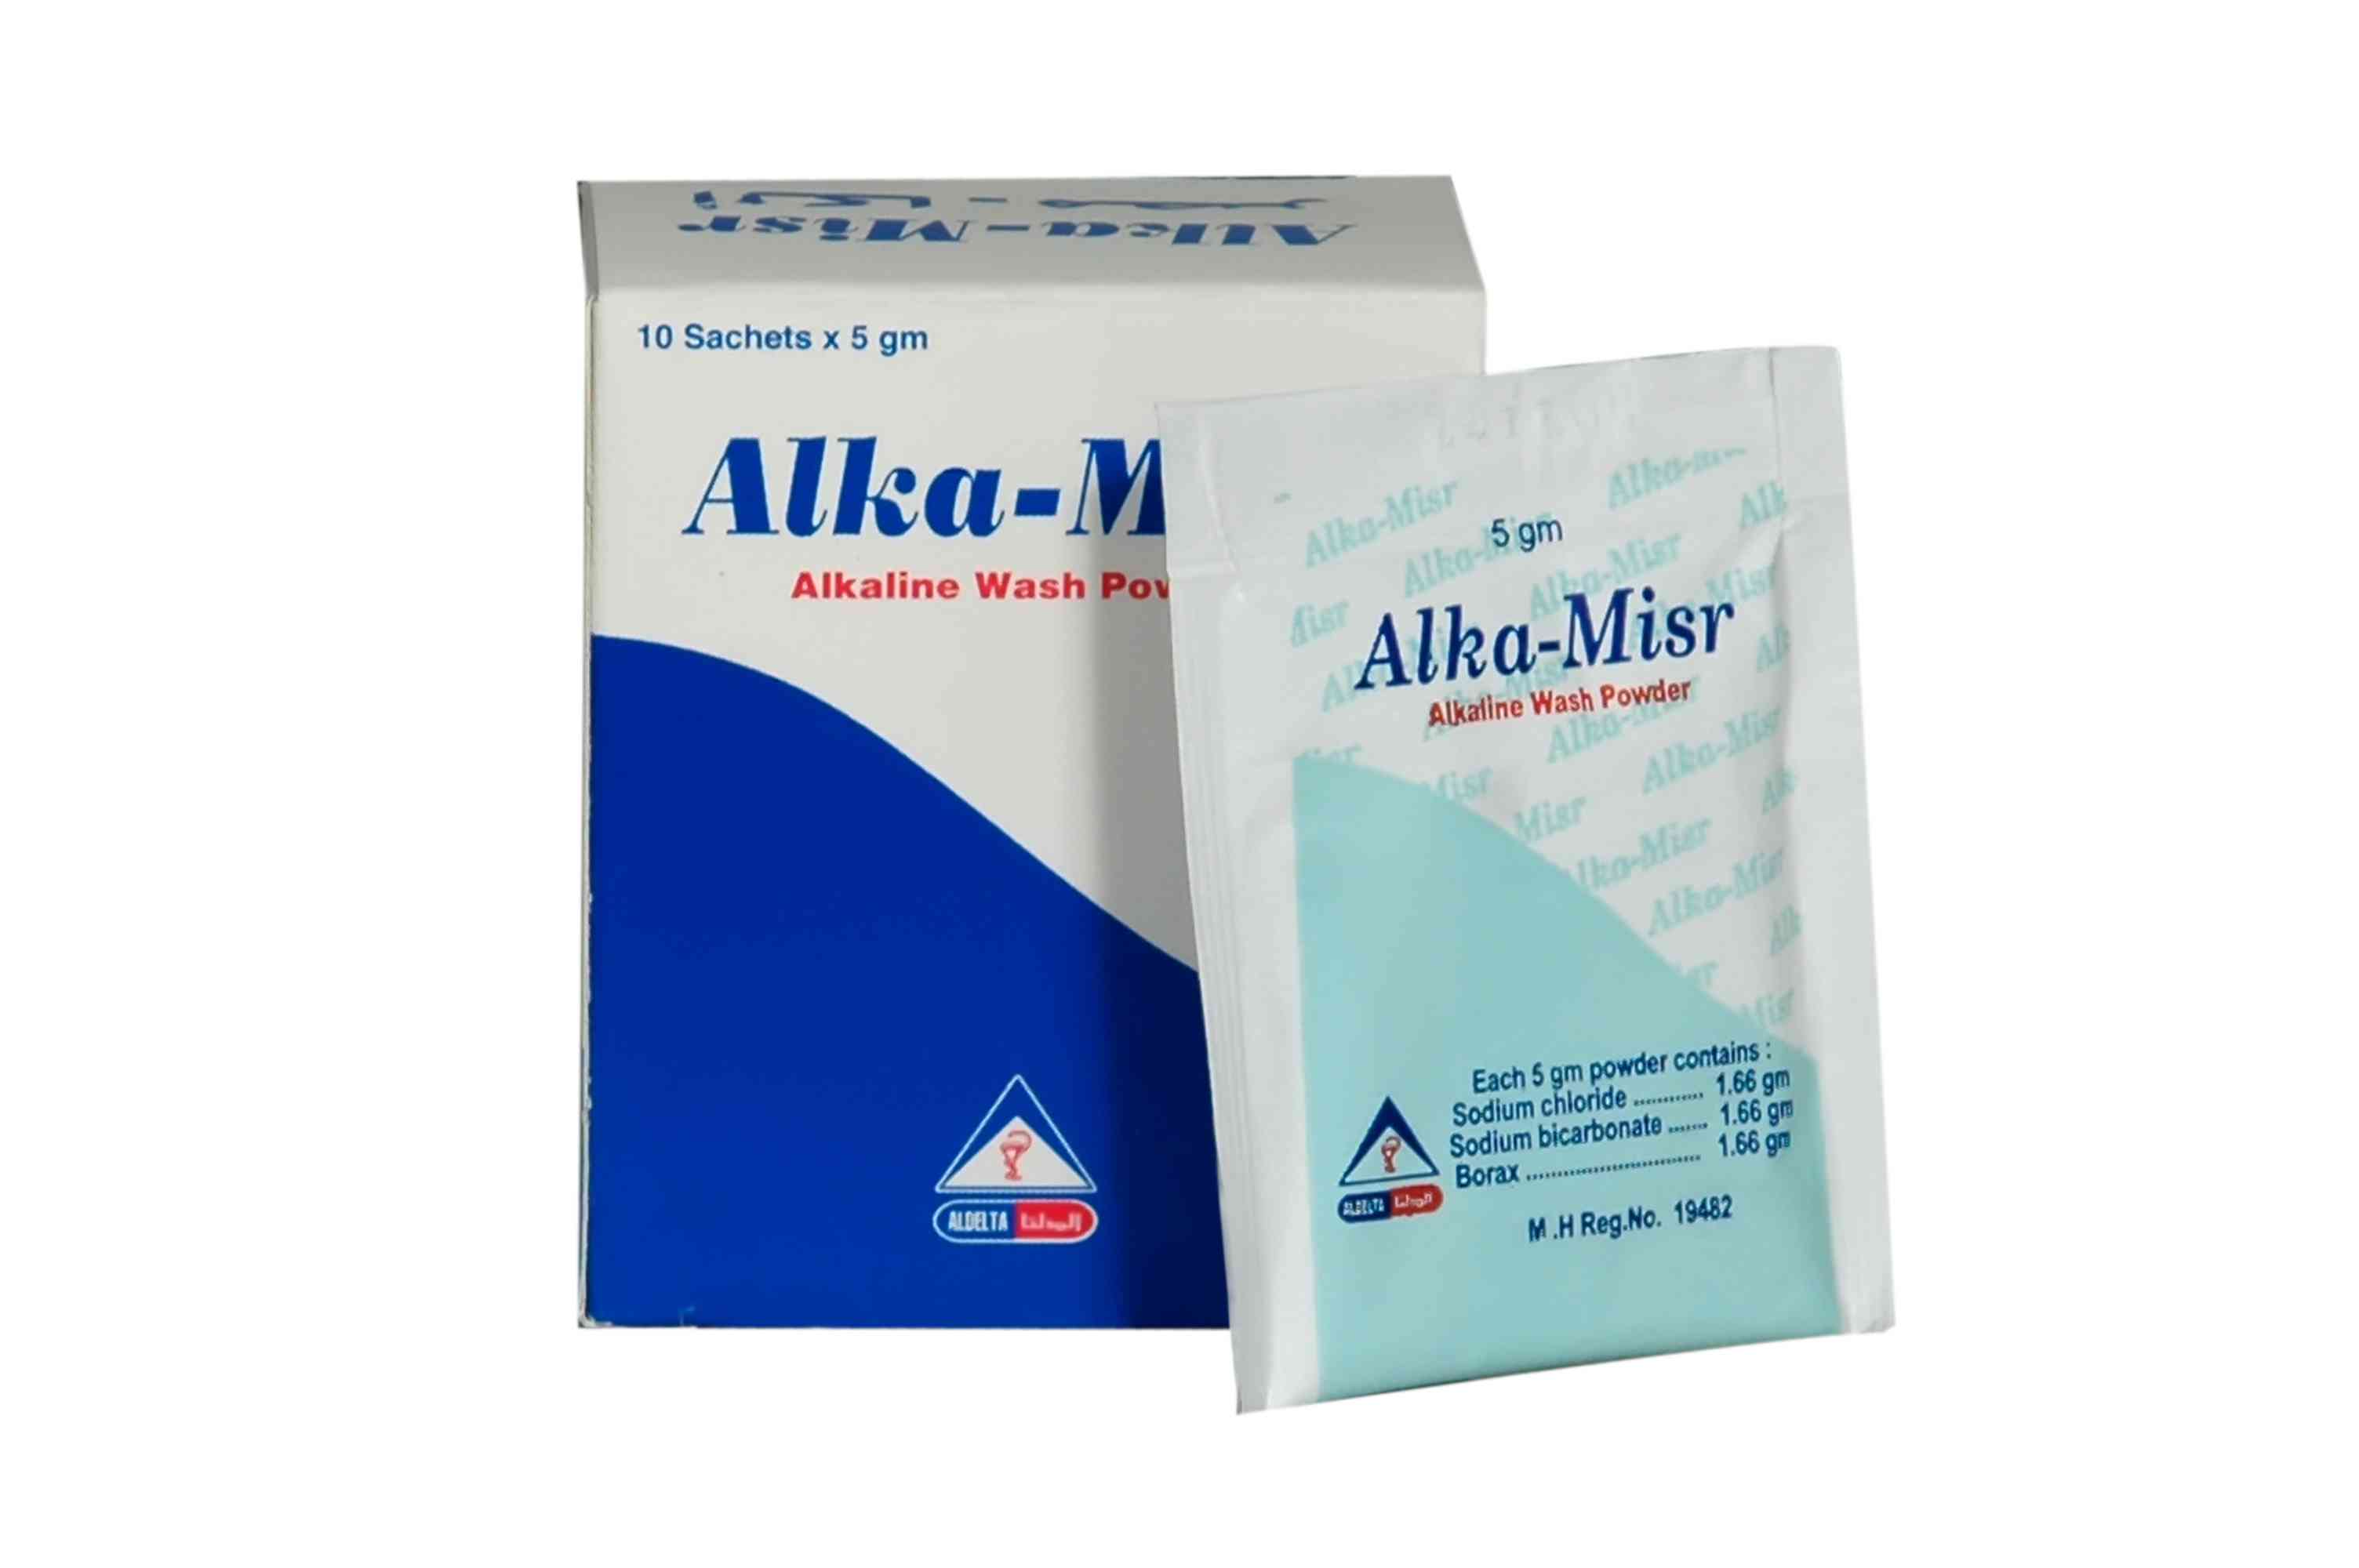 Alka-misr alkaline wash powder 10 sachets